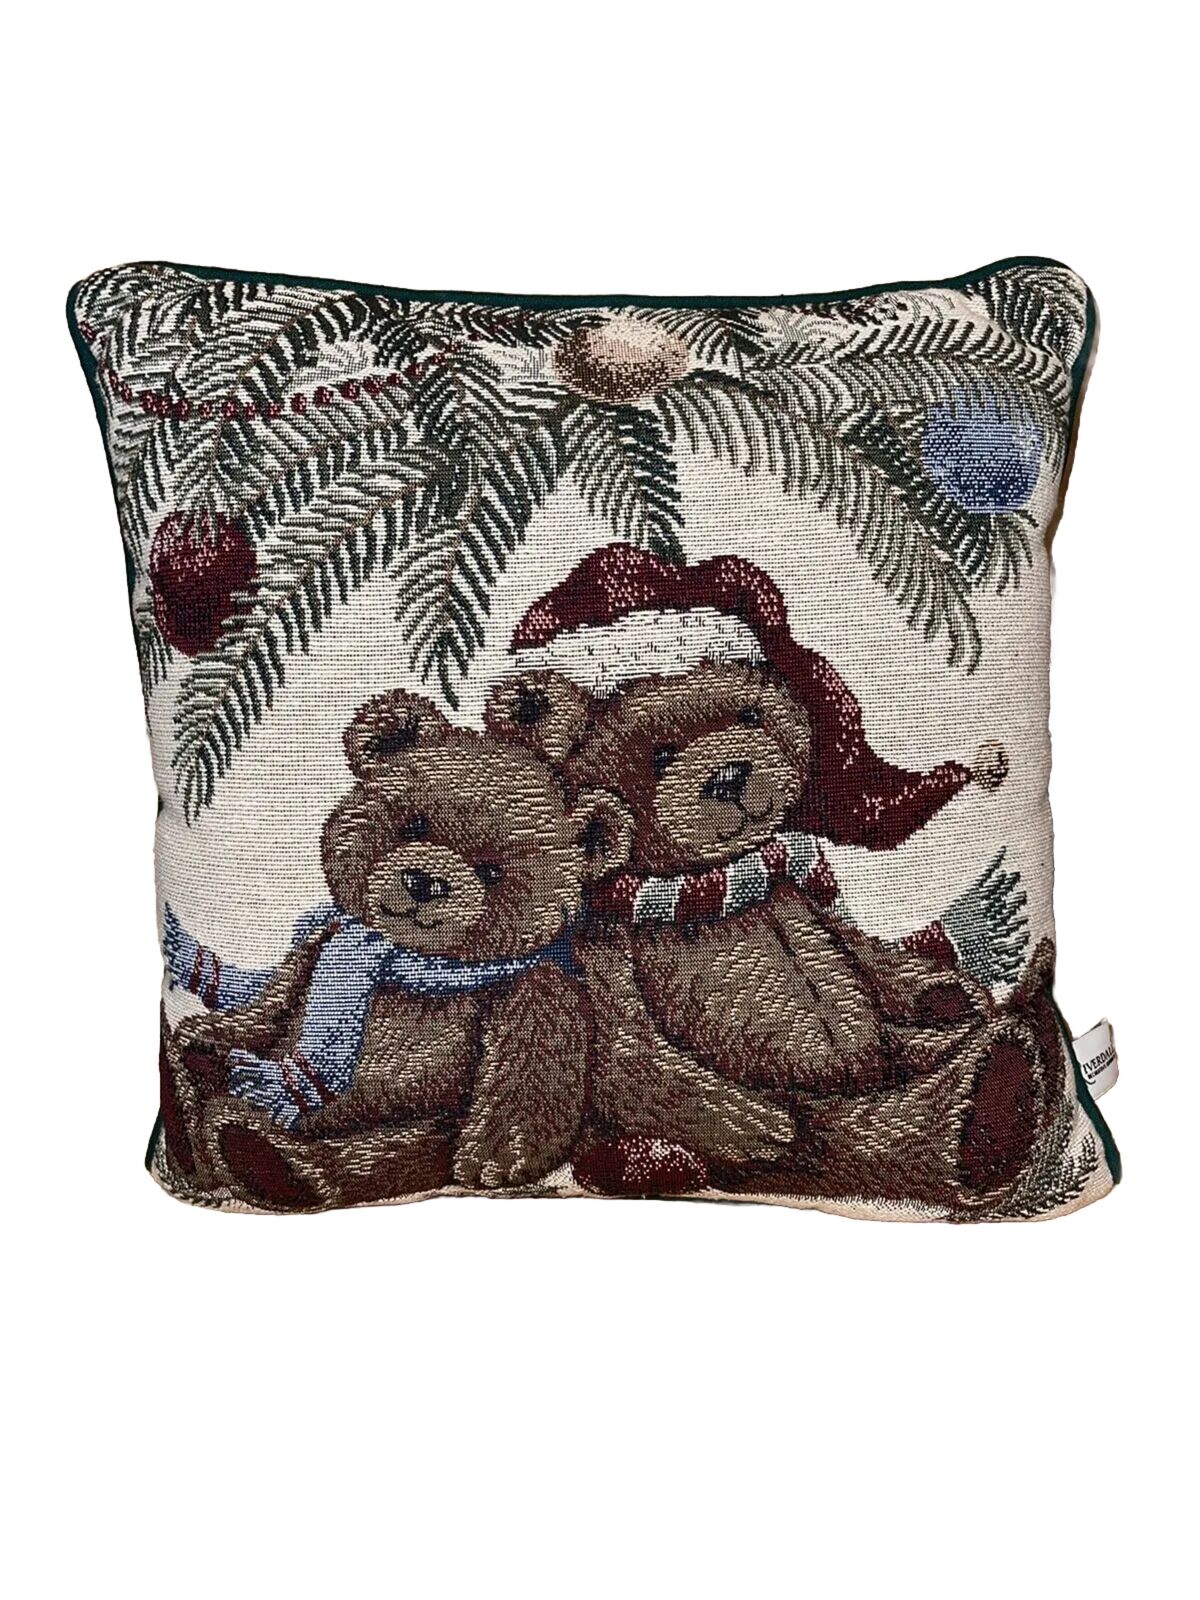 Vintage 15“ X 15“ Riverdale Christmas Pillow Teddy Bears Fun